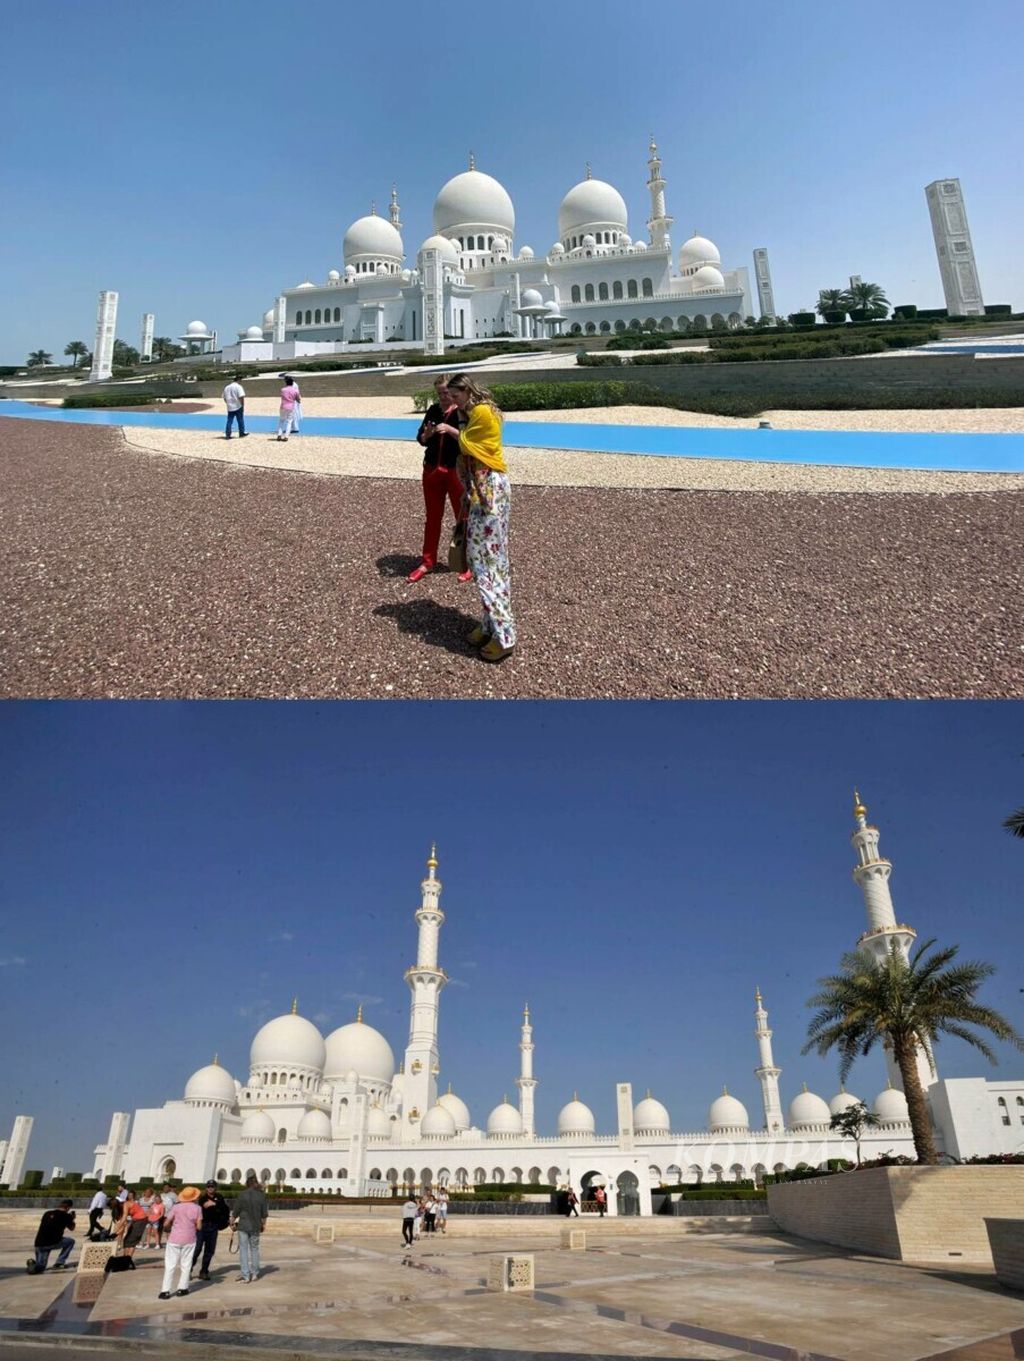 Turis asing berfoto di depan Masjid Agung Sheikh Zayed di Abu Dhabi, Uni Emirat Arab, 20 Maret 2020 (atas). Rombongan turis asing berwisata di depan Masjid Agung Sheikh Zayed, 9 Januari 2013 (bawah). 